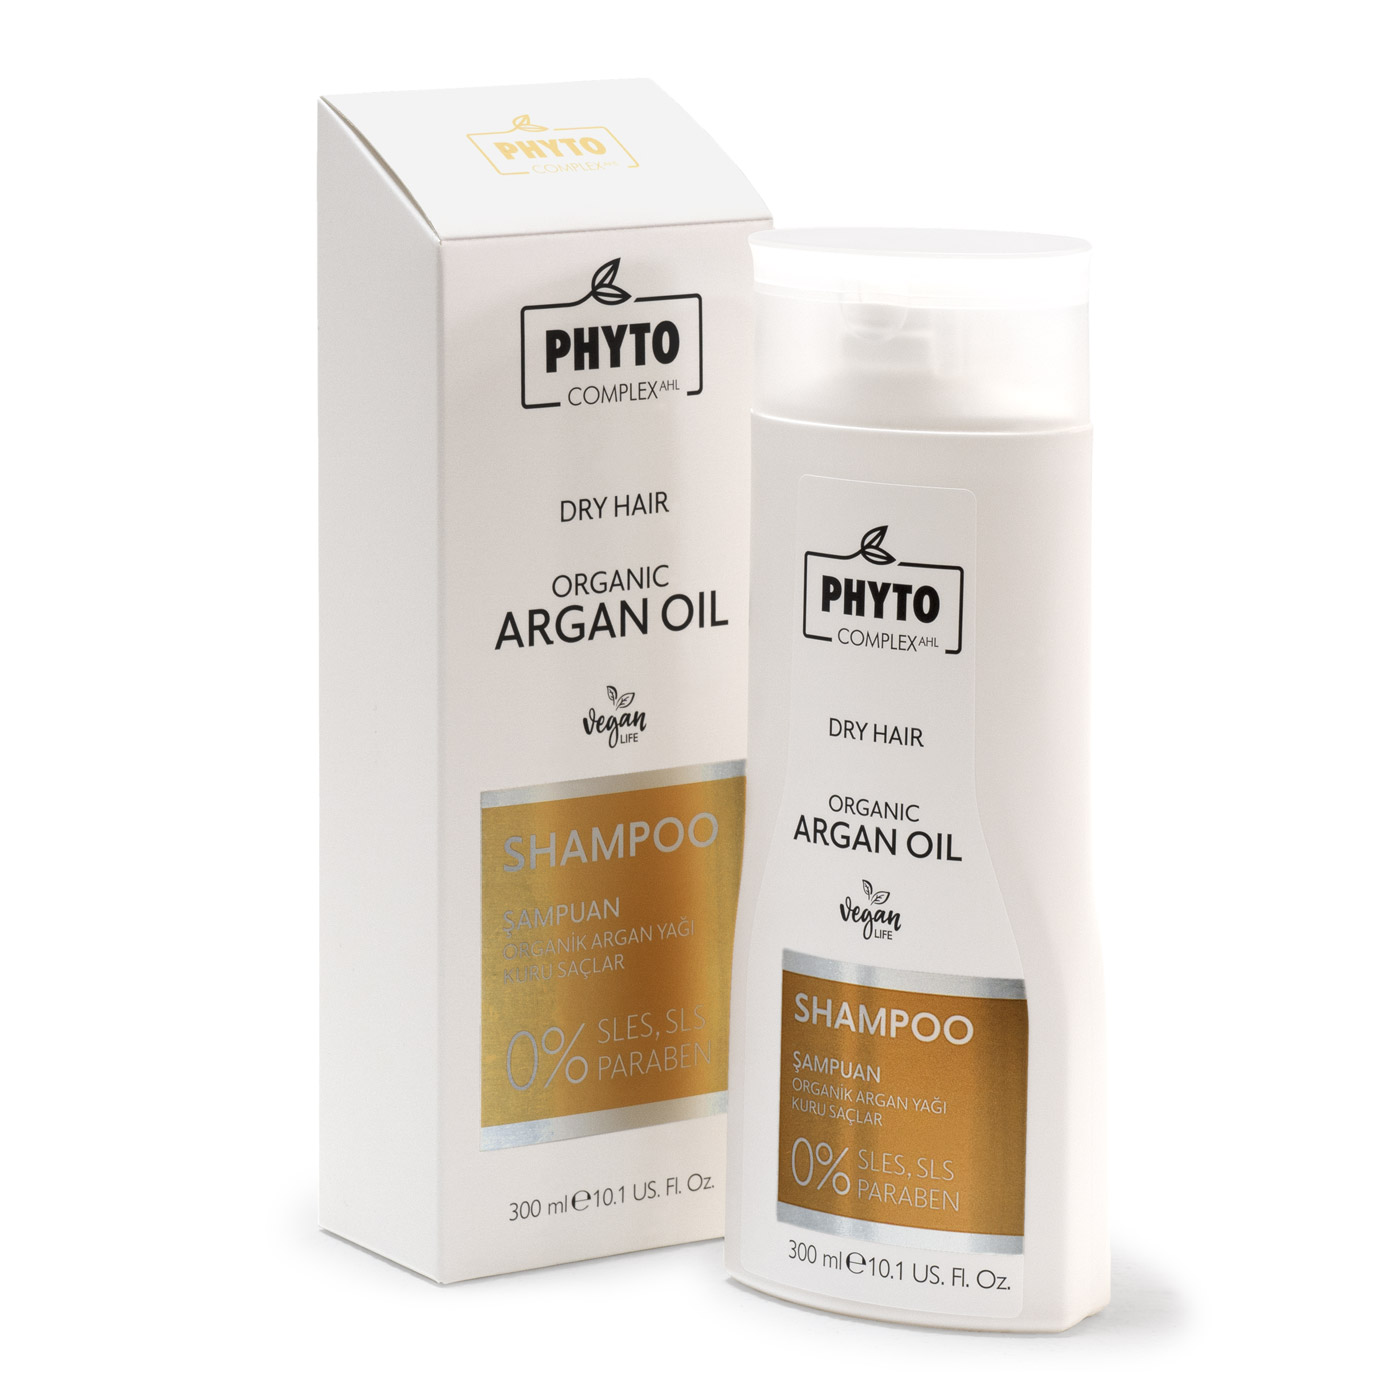 Натуральный шампунь Phytocomplex для сухих волос Organic Argan Dry Hair